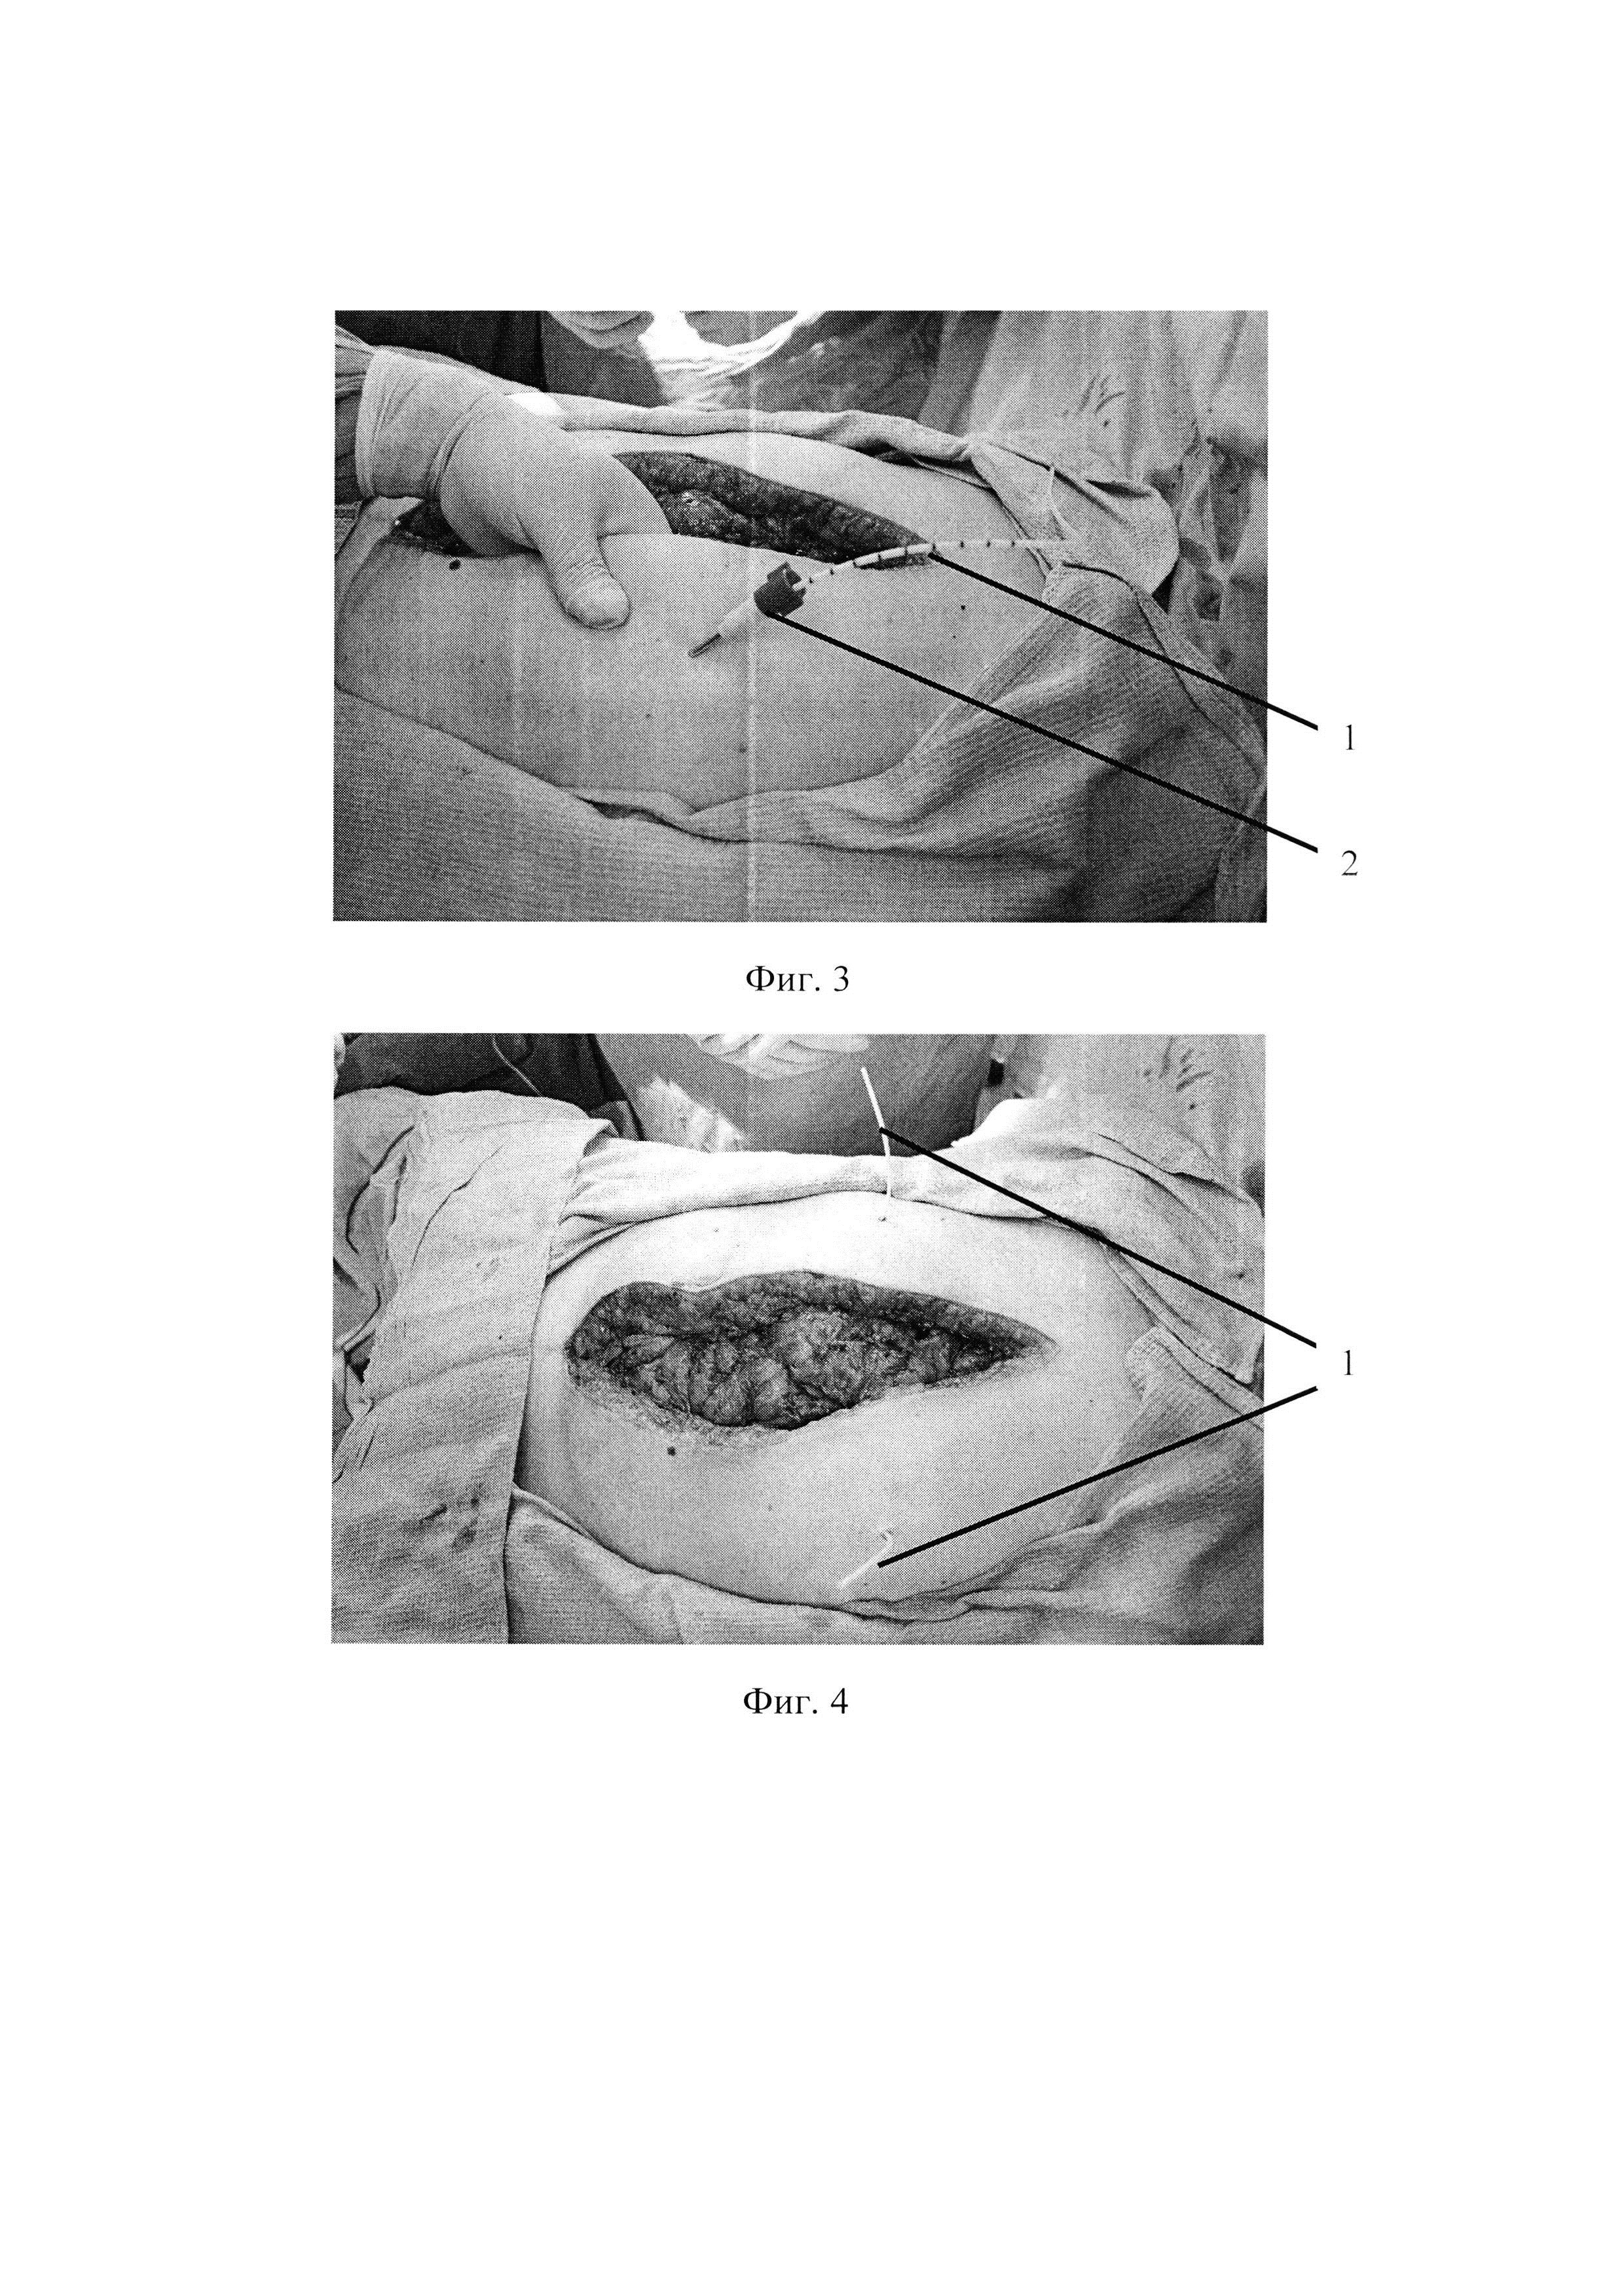 Способ местной сегментарной анестезии в послеоперационном обезболивании лапаротомной раны передней брюшной стенки после неотложных операций у больных острой обтурационной толстокишечной непроходимостью опухолевого генеза